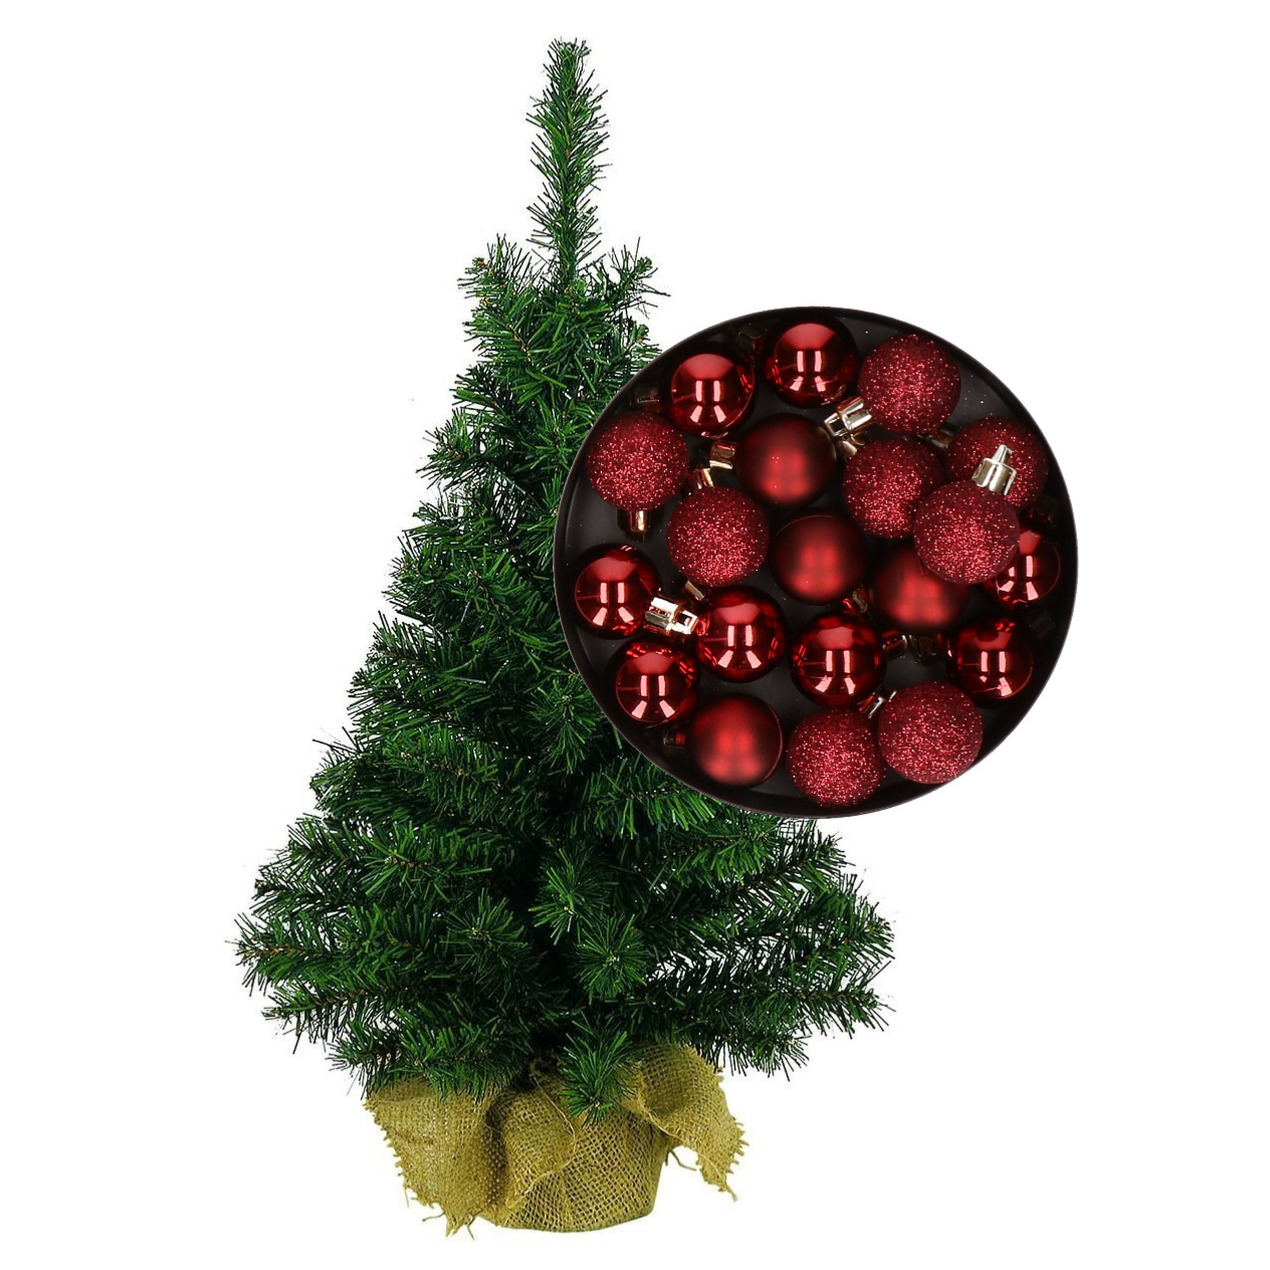 Mini kerstboom/kunst kerstboom H75 cm inclusief kerstballen donkerrood -